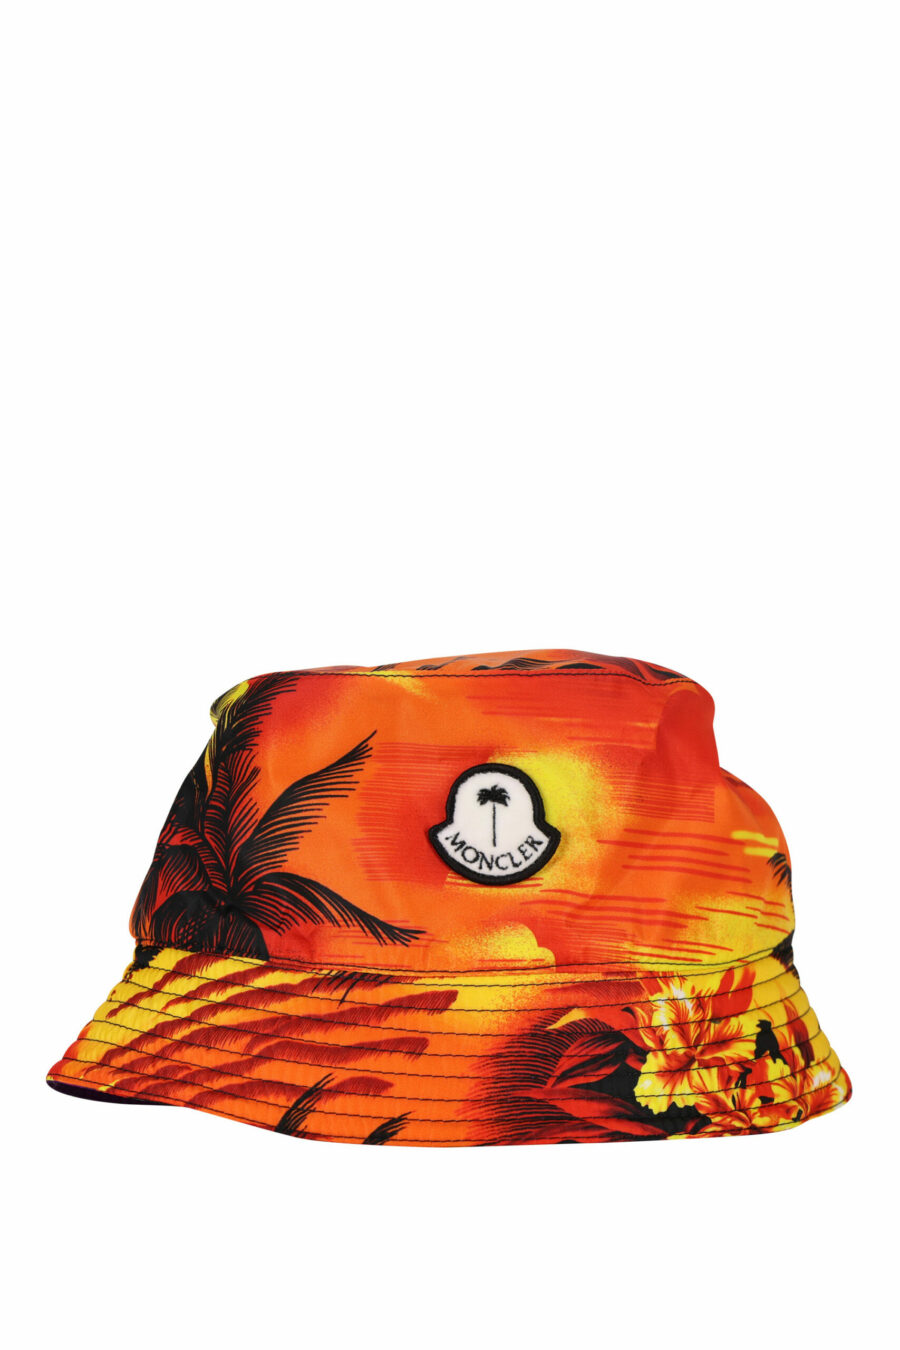 Sombrero de pescador multicolor de palmeras - 8057151141399 scaled